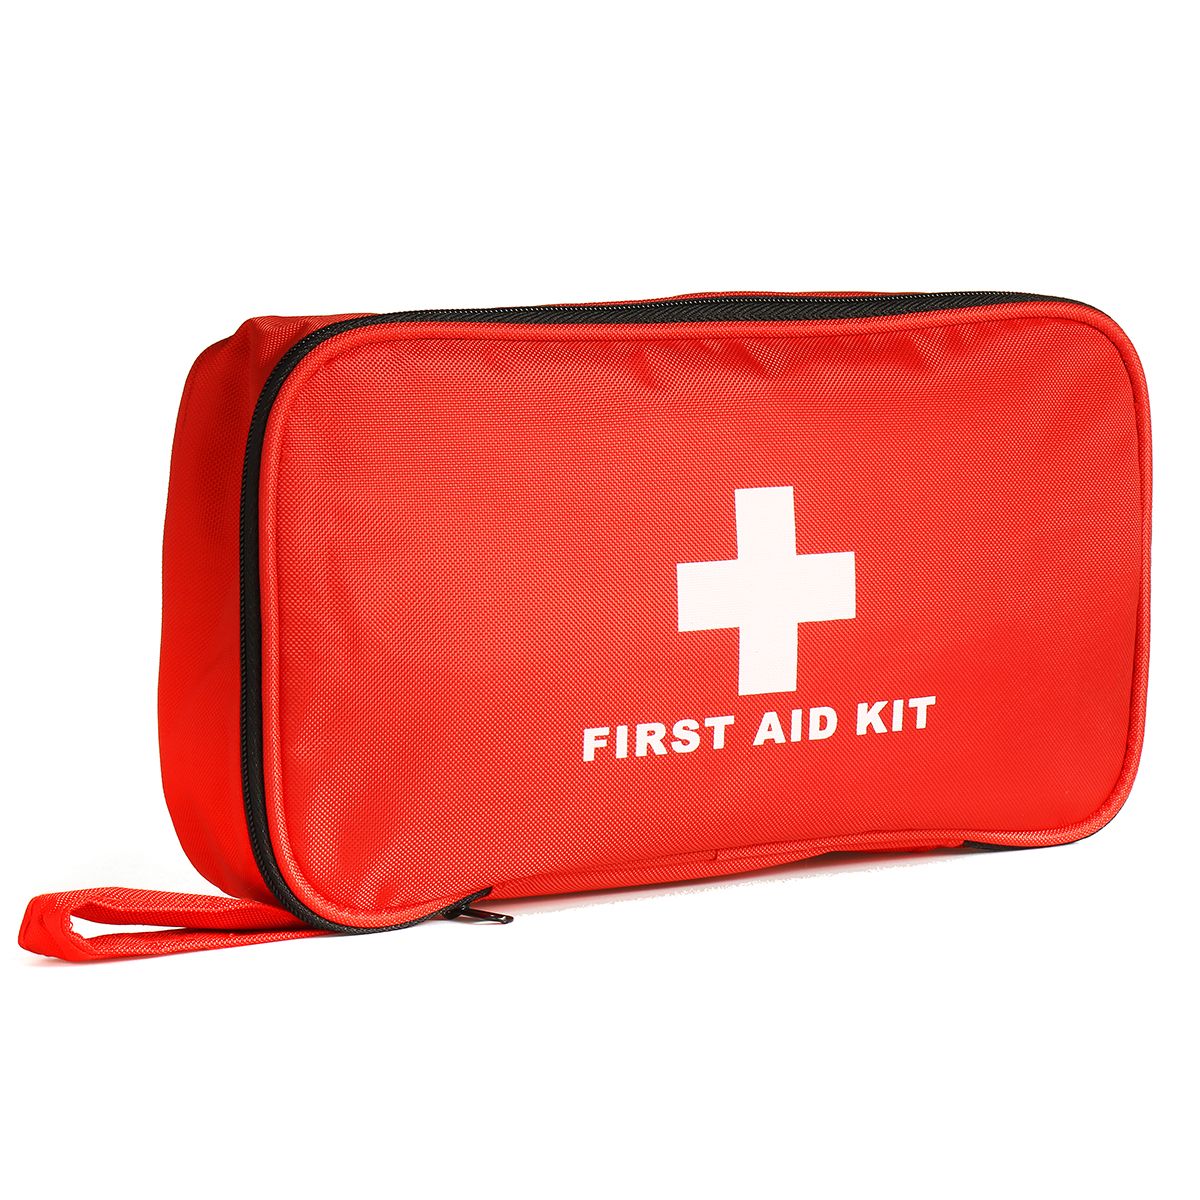 180-Pcs-Car-Kit-Family-First-Aid-Kit-Earthquake-Survival-Kit-Outdoor-Kit-1589602